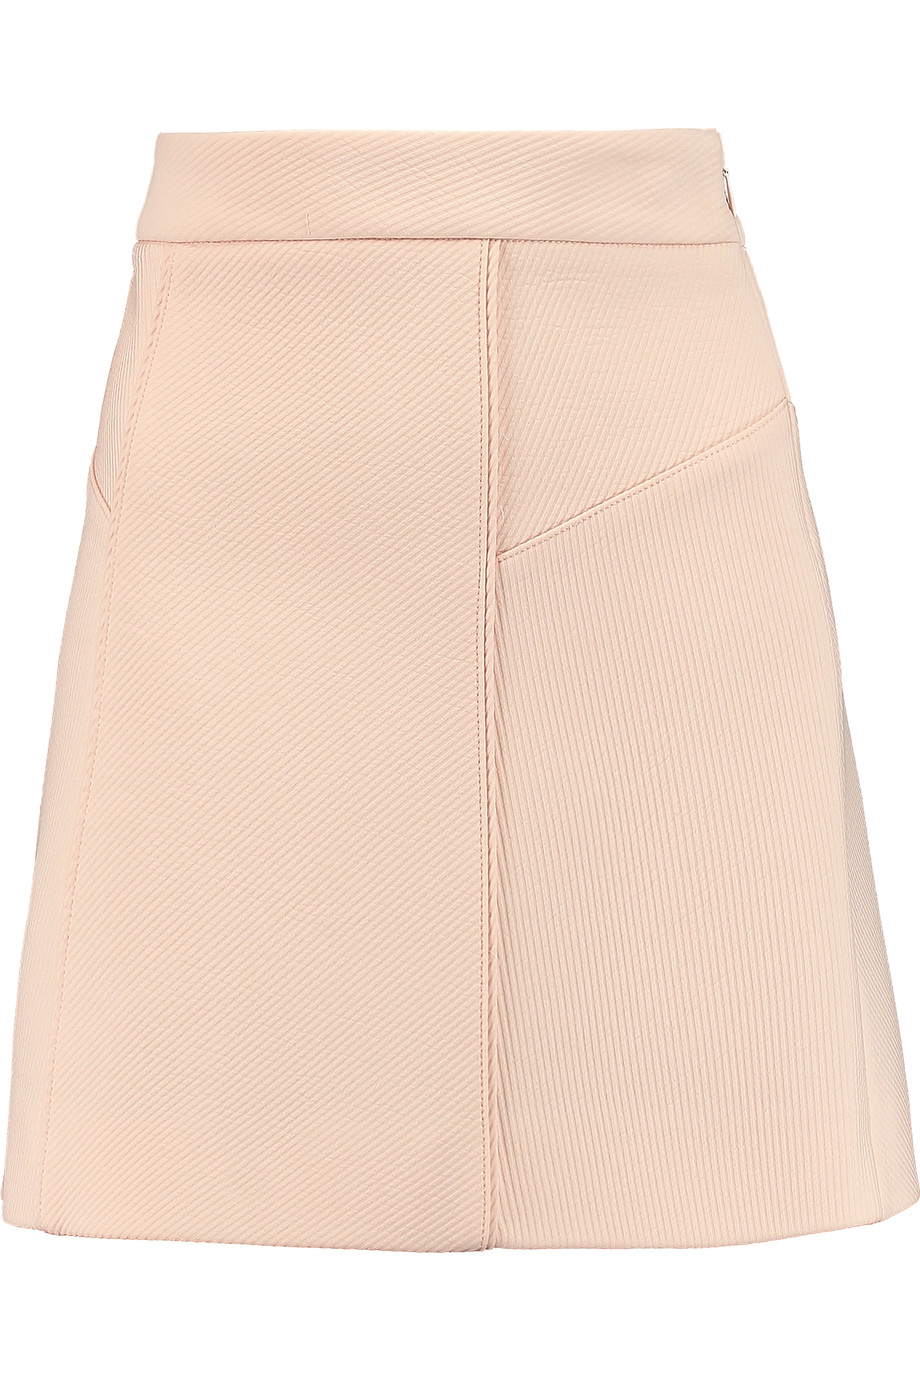 Maje Jacquard Mini Skirt | ModeSens